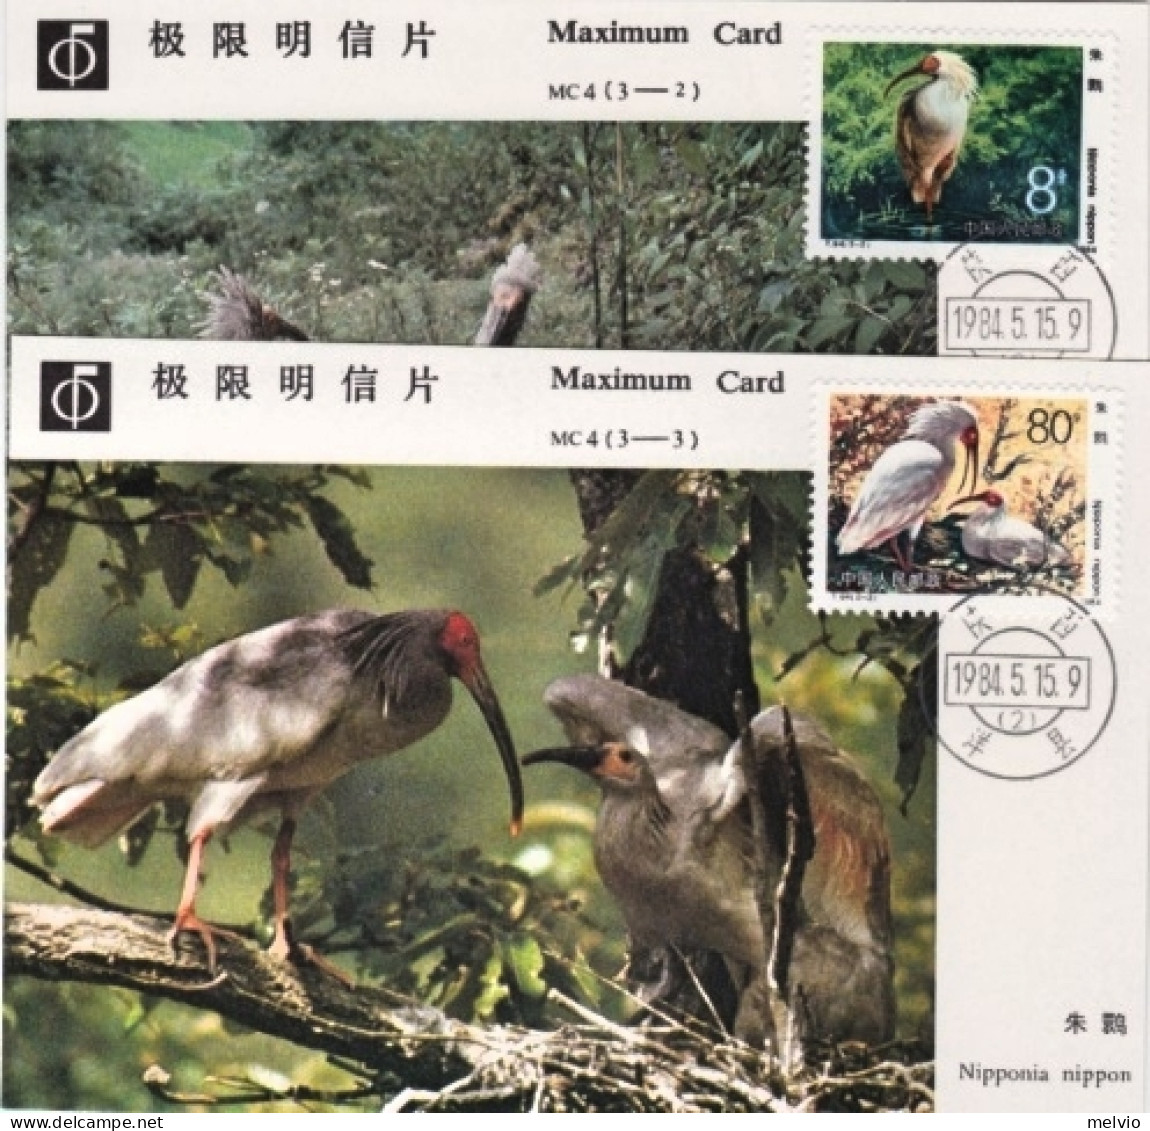 1984-Cina China MC4, Ibis Maximum Cards - Storia Postale